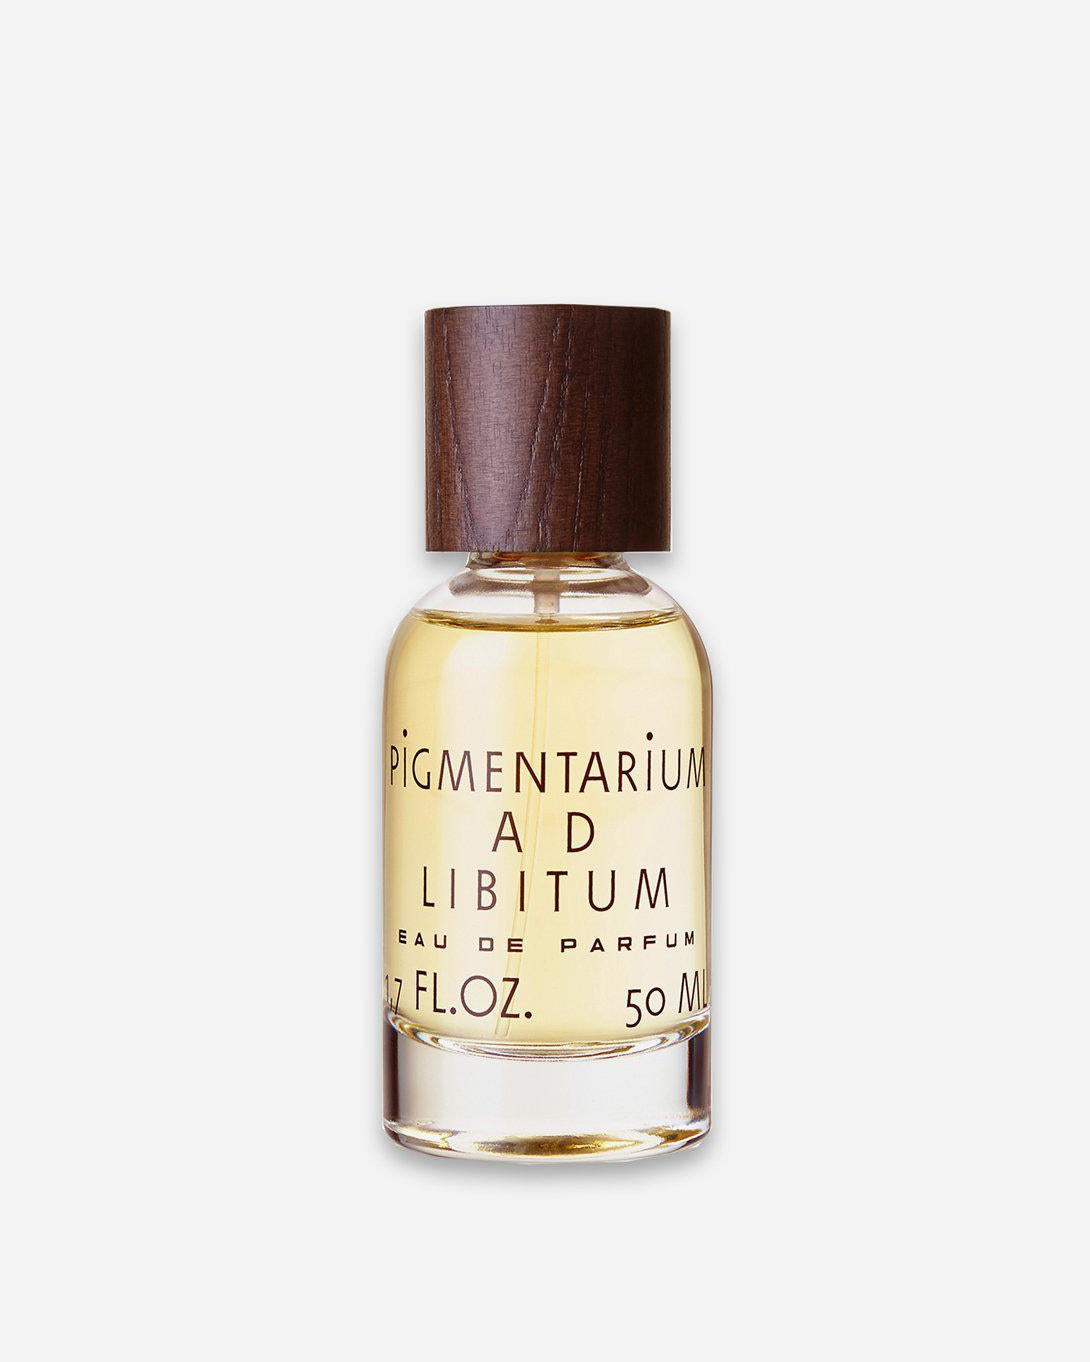 AD Libitum Perfume - Fragrance - Pigmentarium - Elevastor